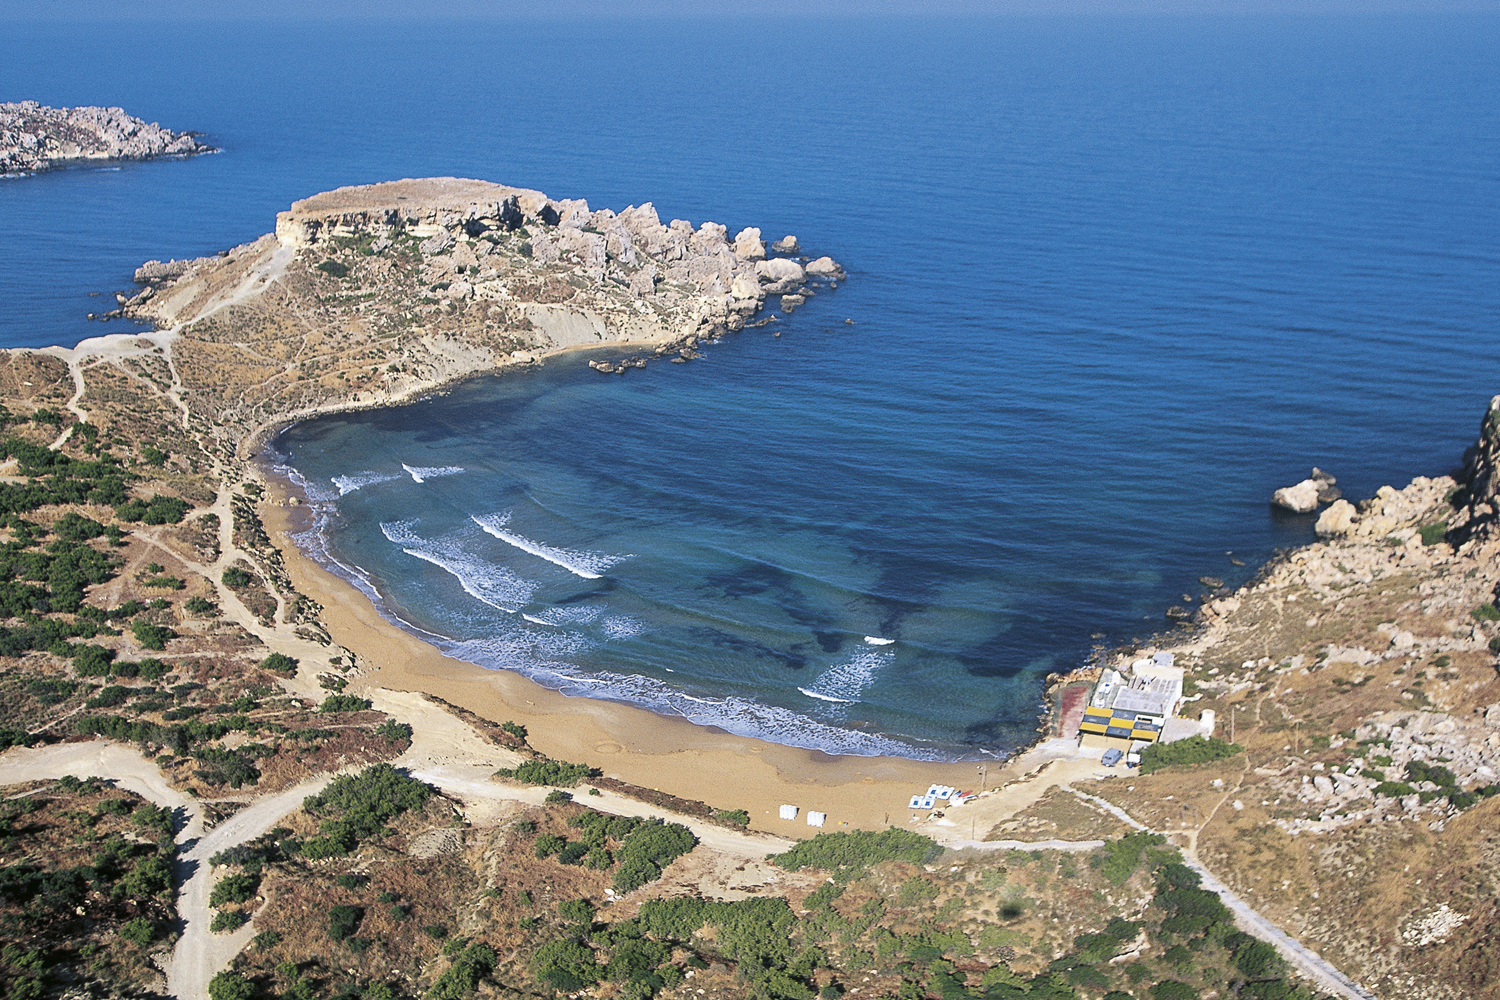 Olcsó tengerparti nyaralás: ide utazz Tunézia és Egyiptom kiesése után